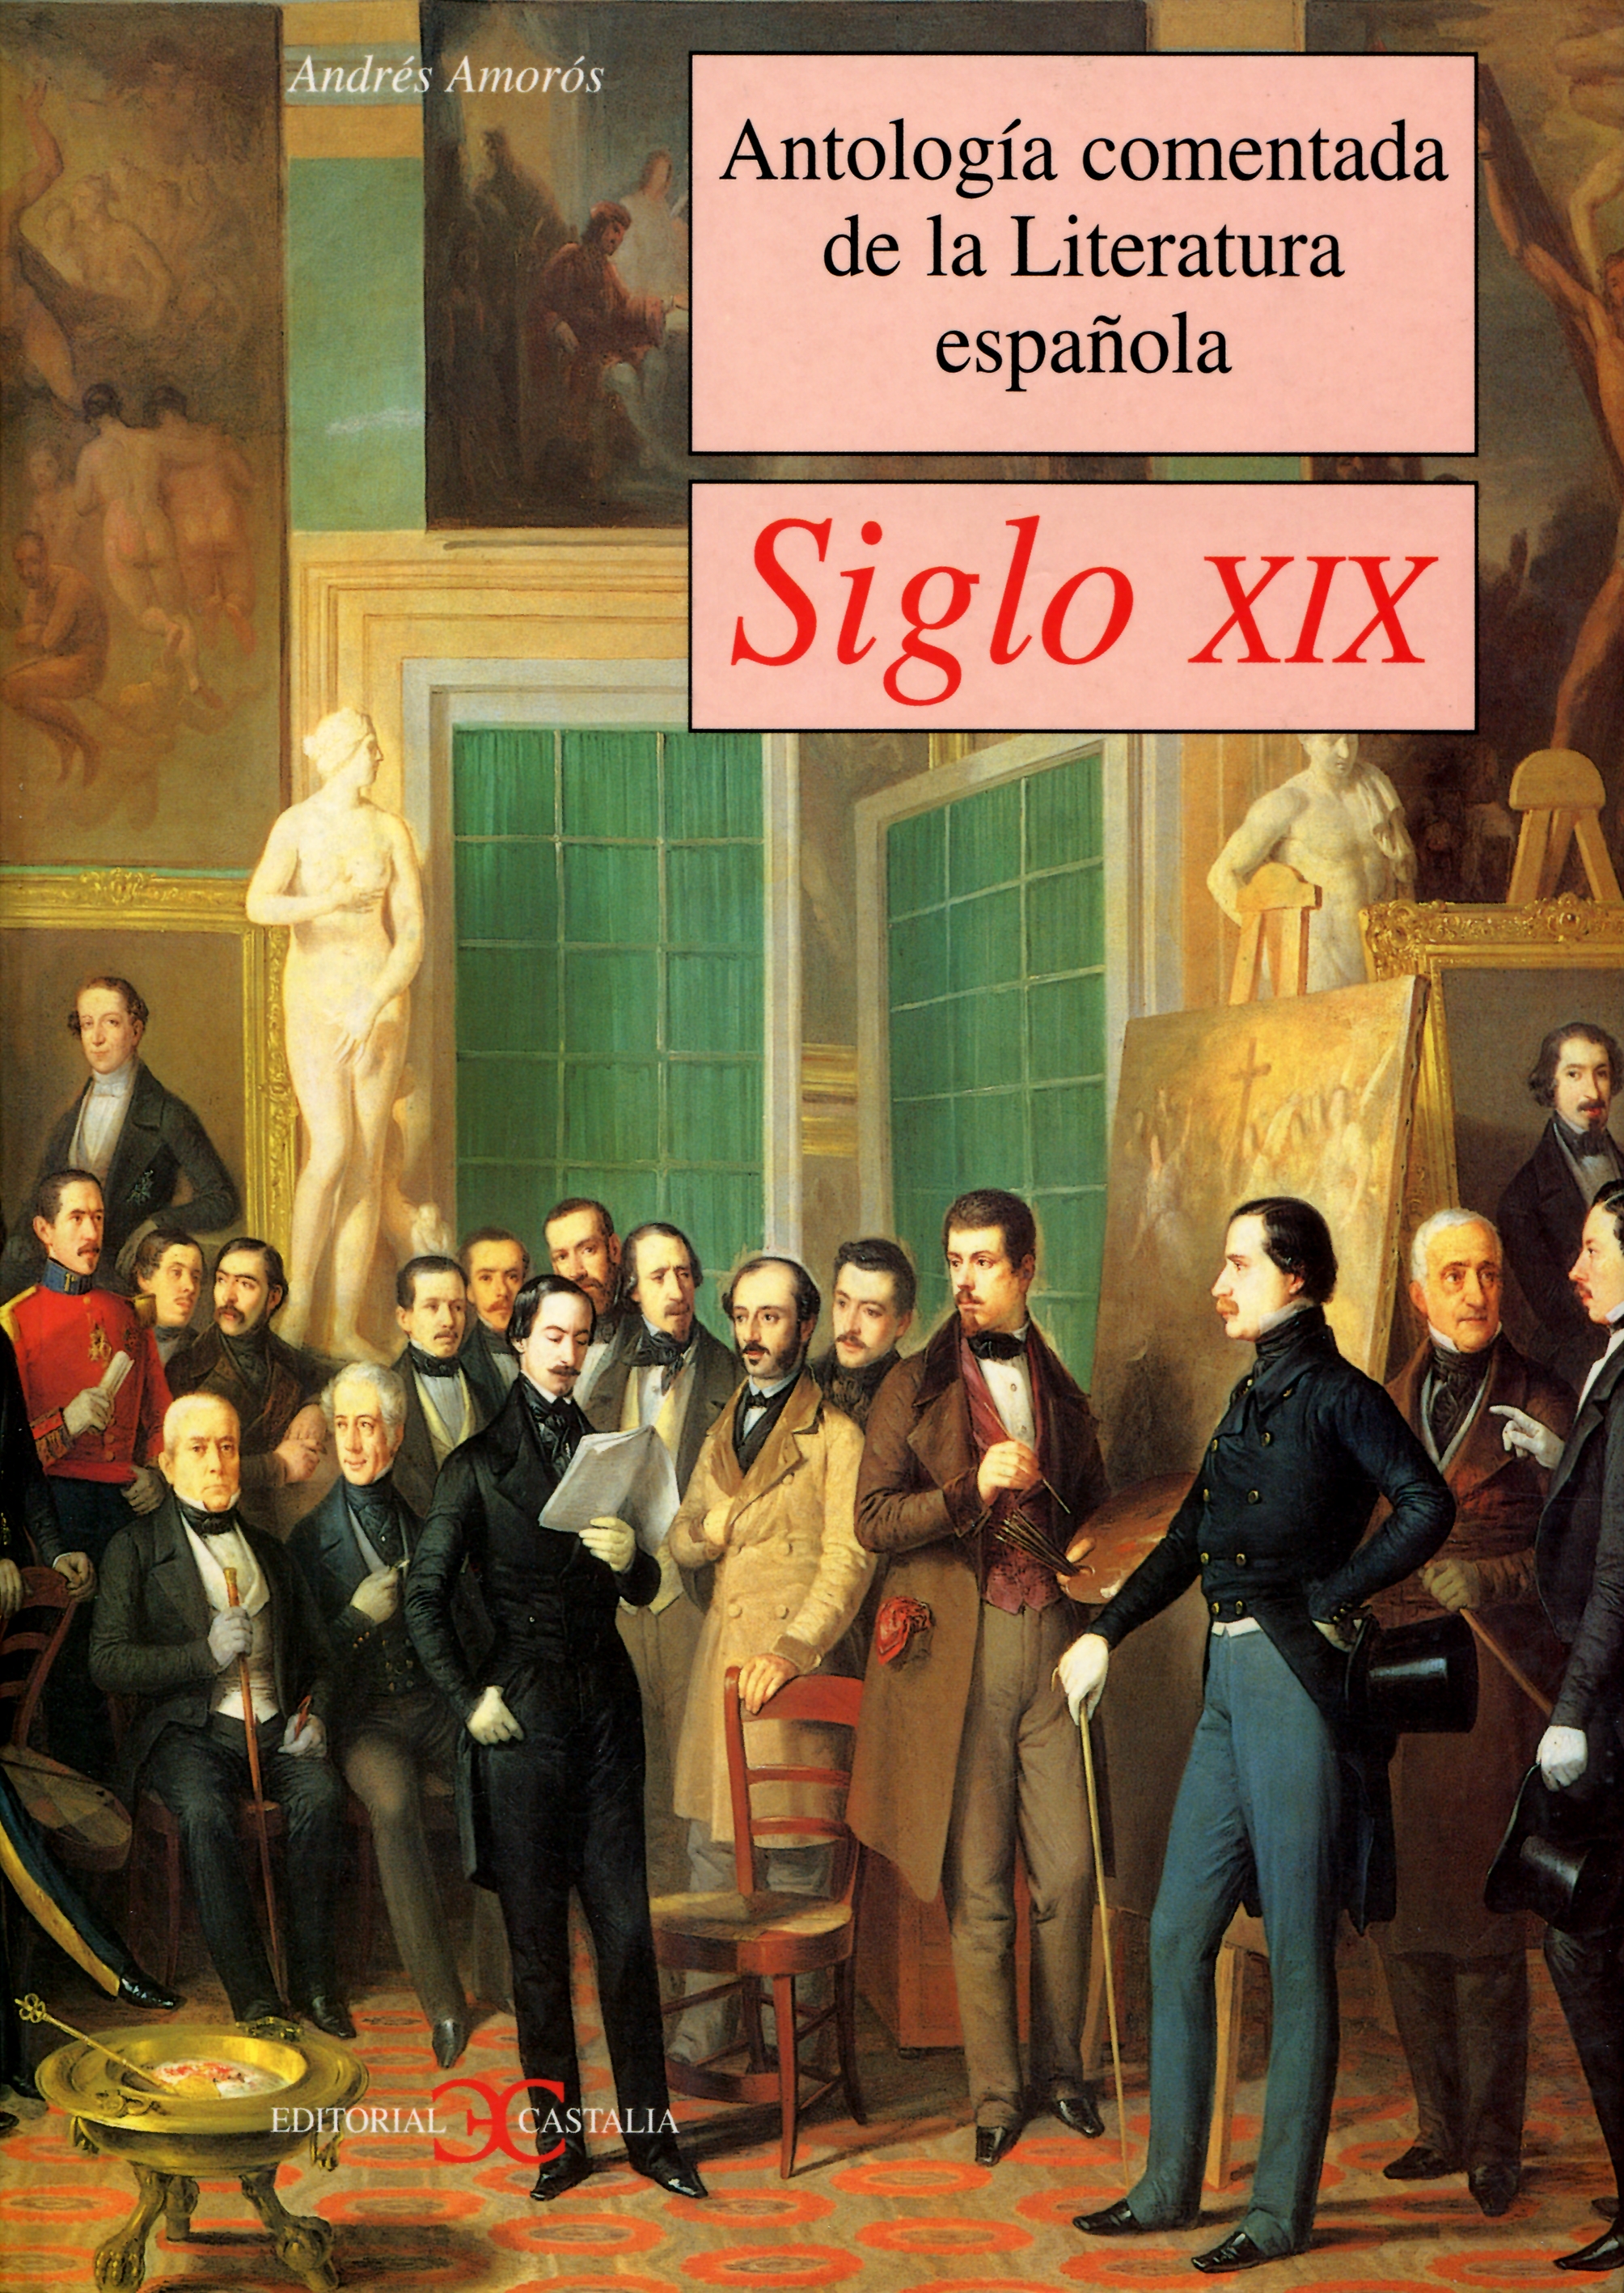 Antología comentada de la Literatura española. Siglo XIX